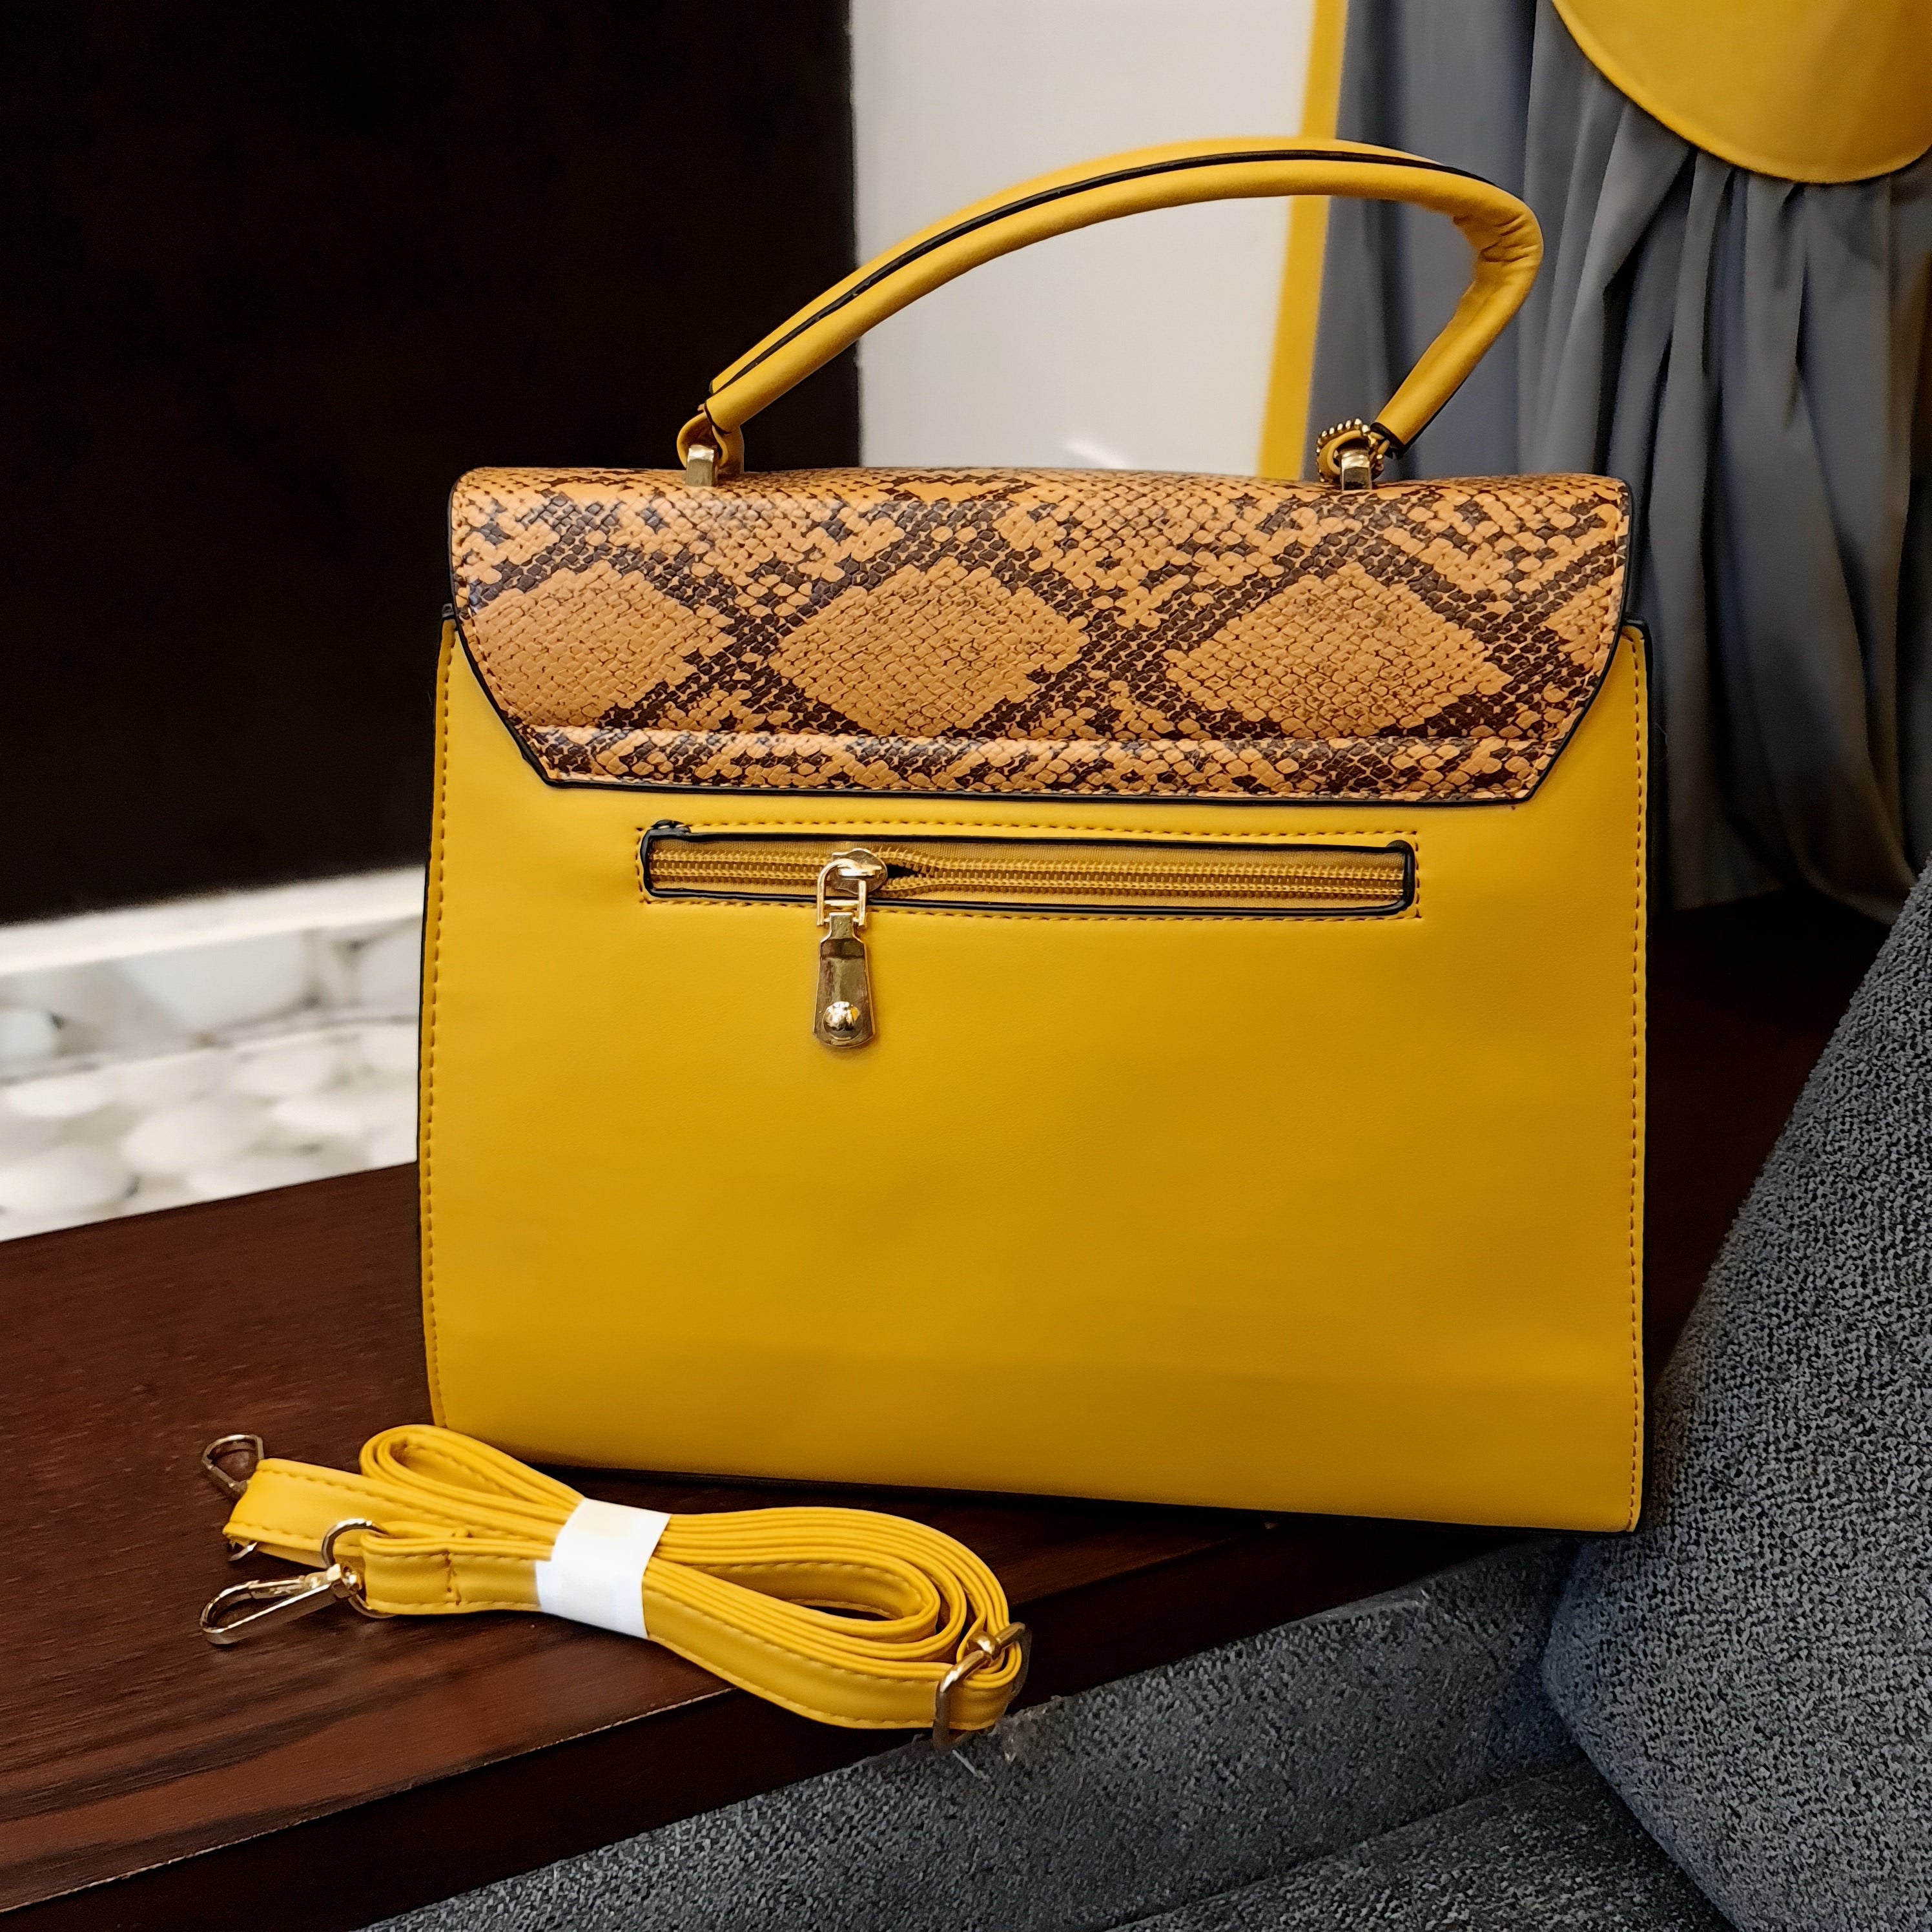 women's handbags - Maha fashions -  women's handbags